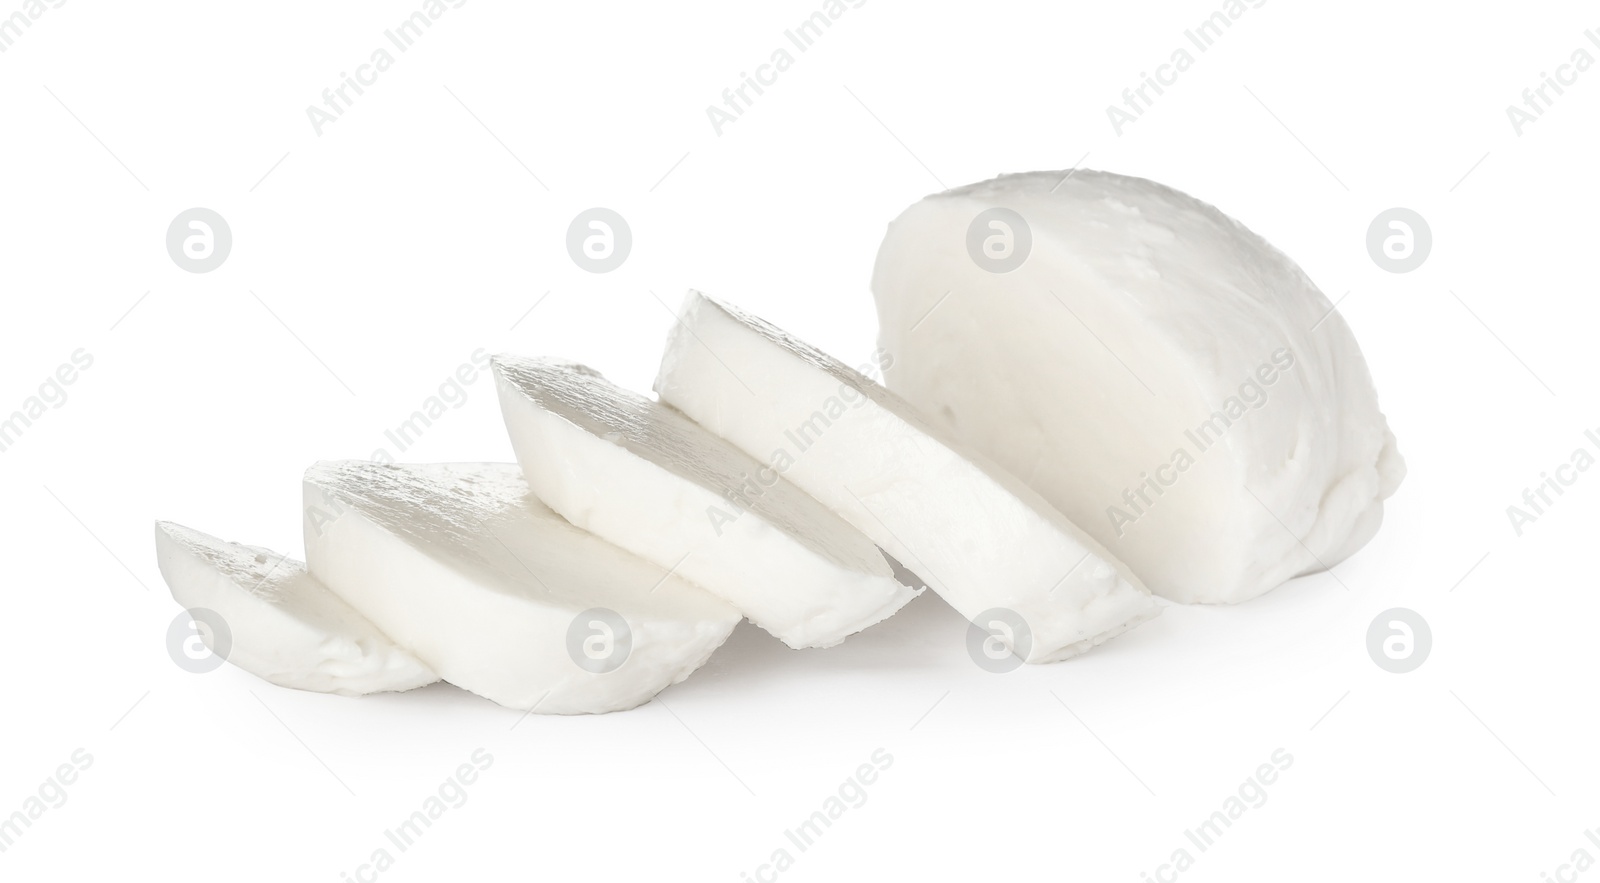 Photo of Delicious mozzarella cheese slices on white background